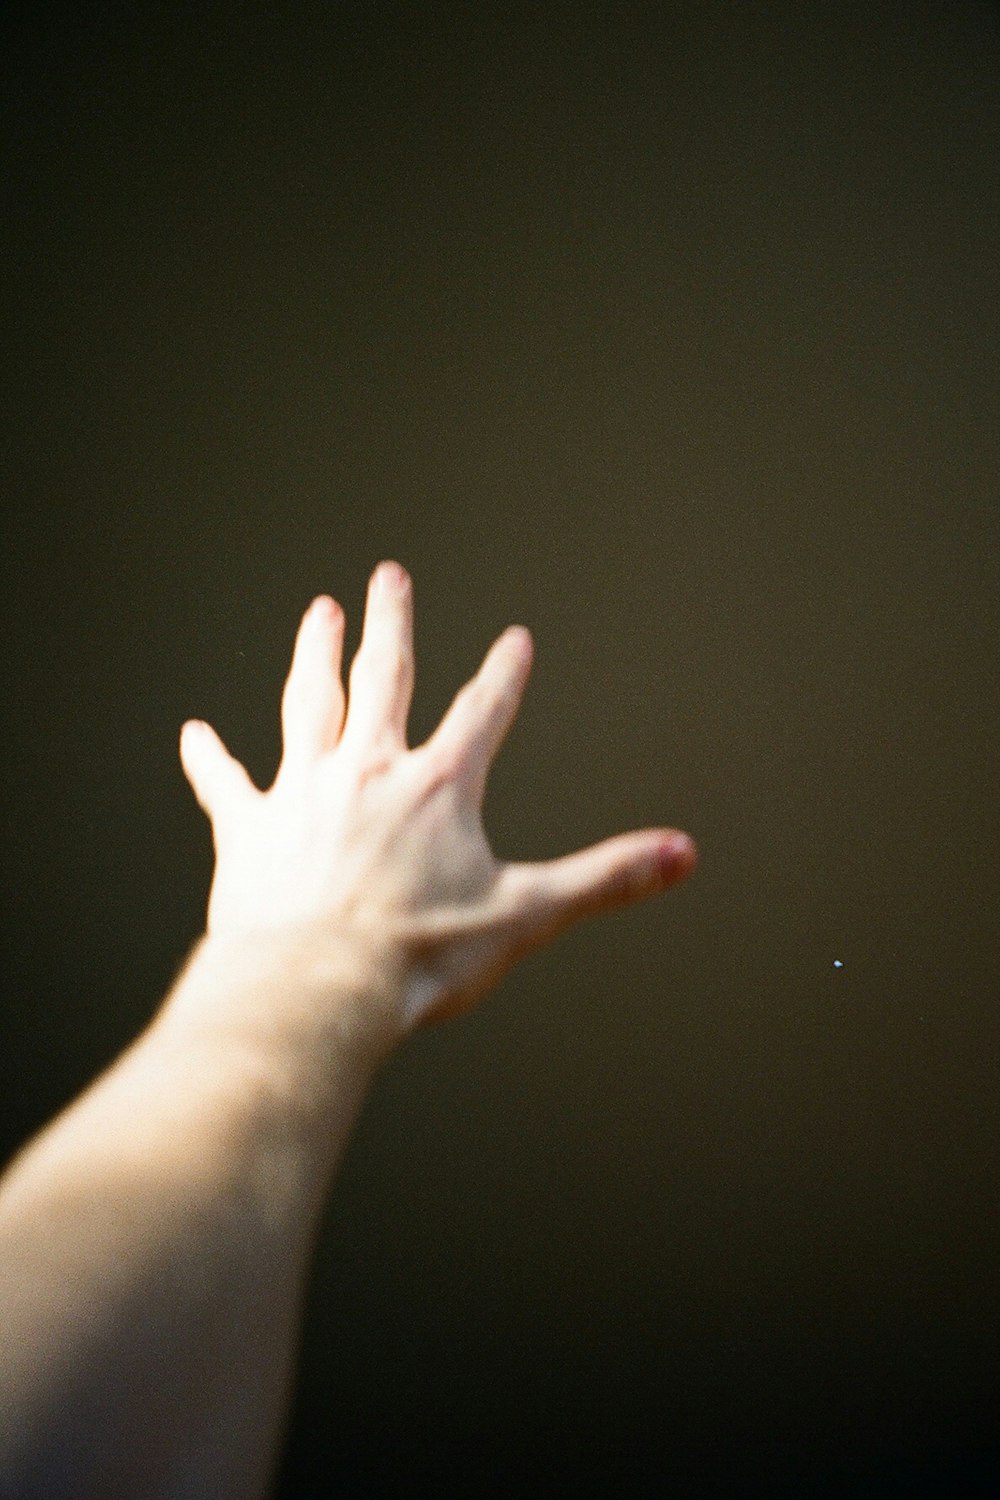 La mano de una persona que se extiende para atrapar un frisbee